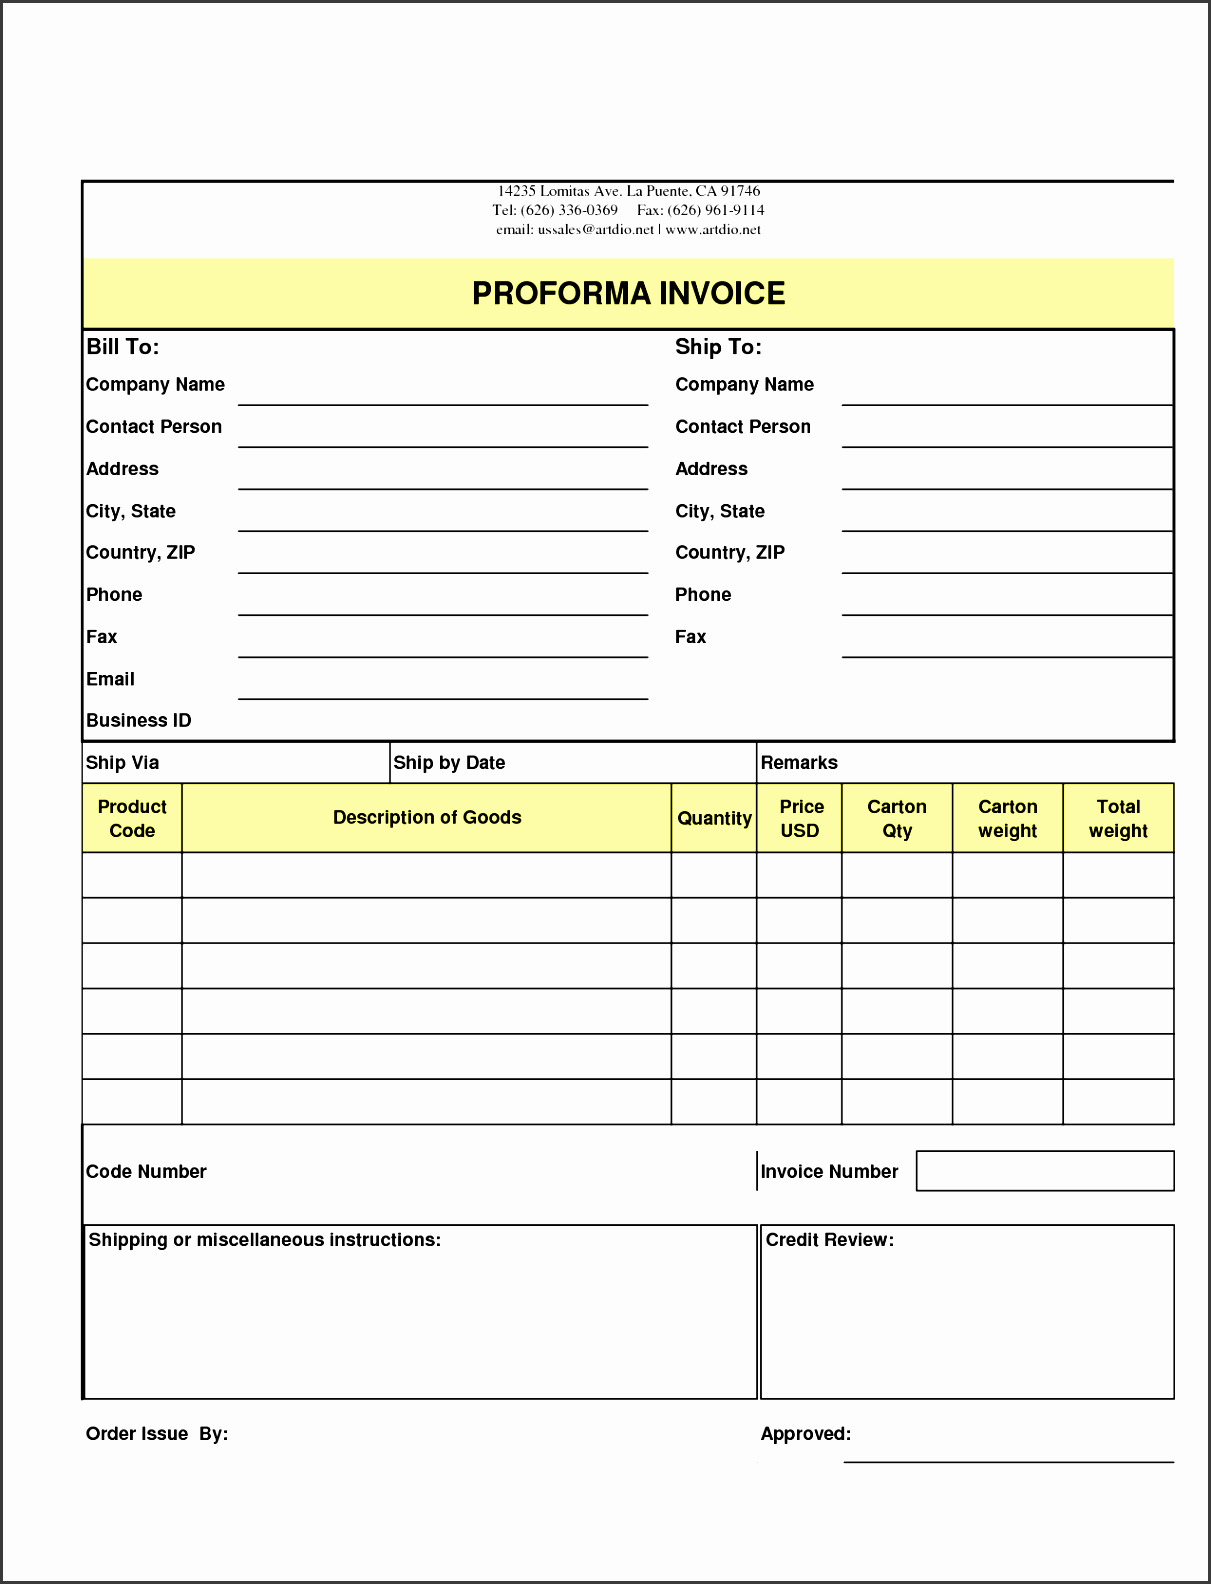 order form template best business indesign pbk order form template form full free